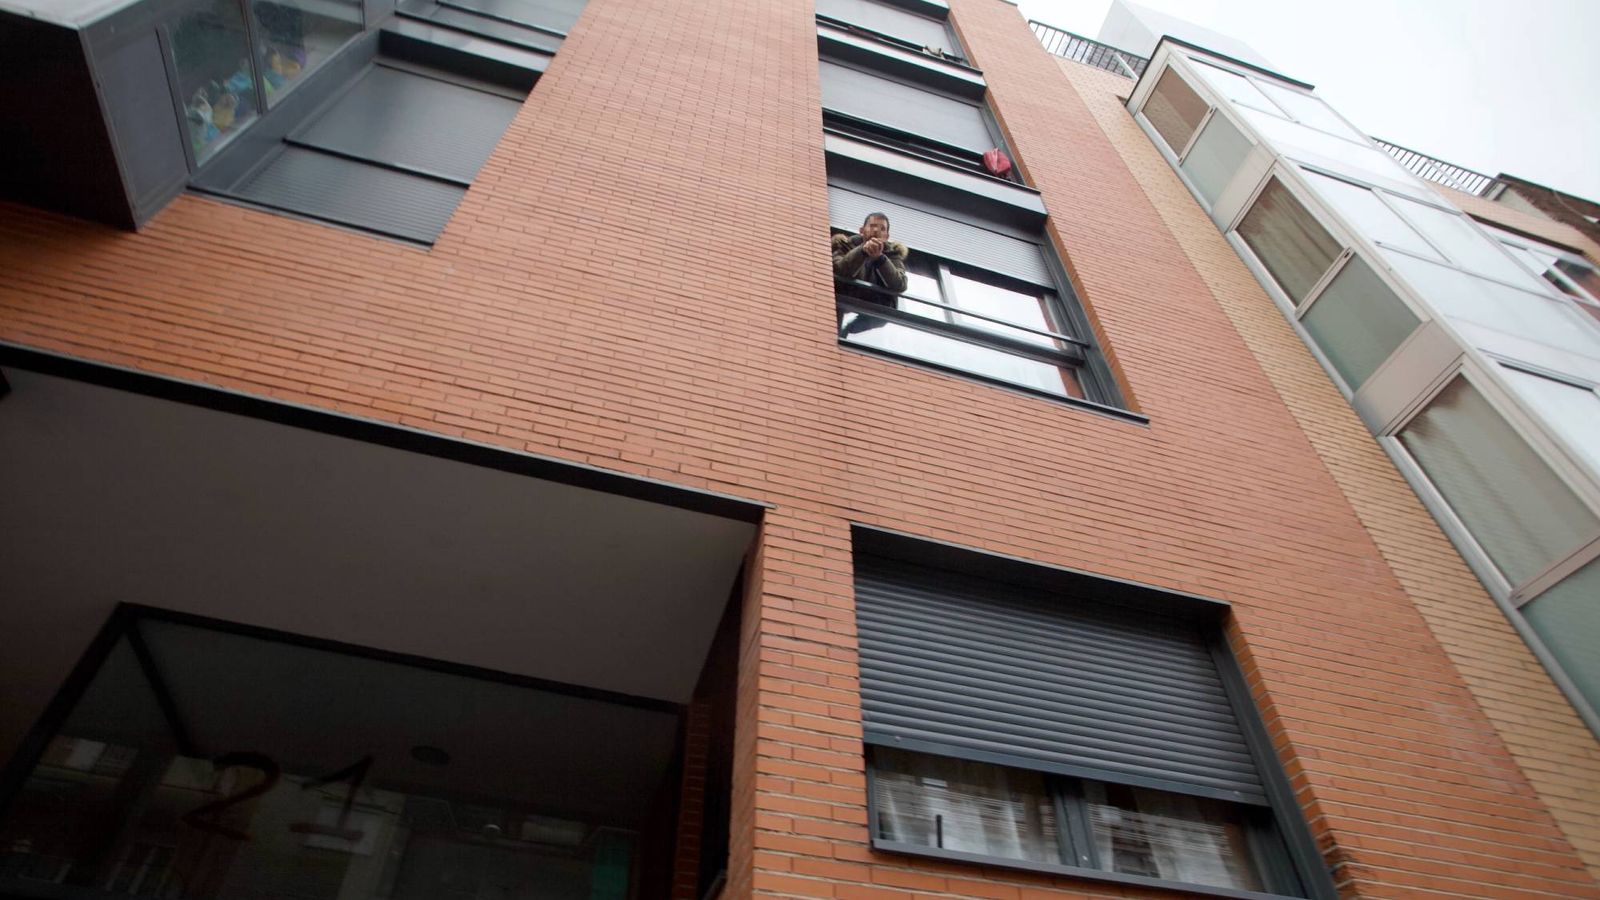 Foto: Un okupa se asoma a la ventana de un piso en Madrid. (Enrique Villarino)